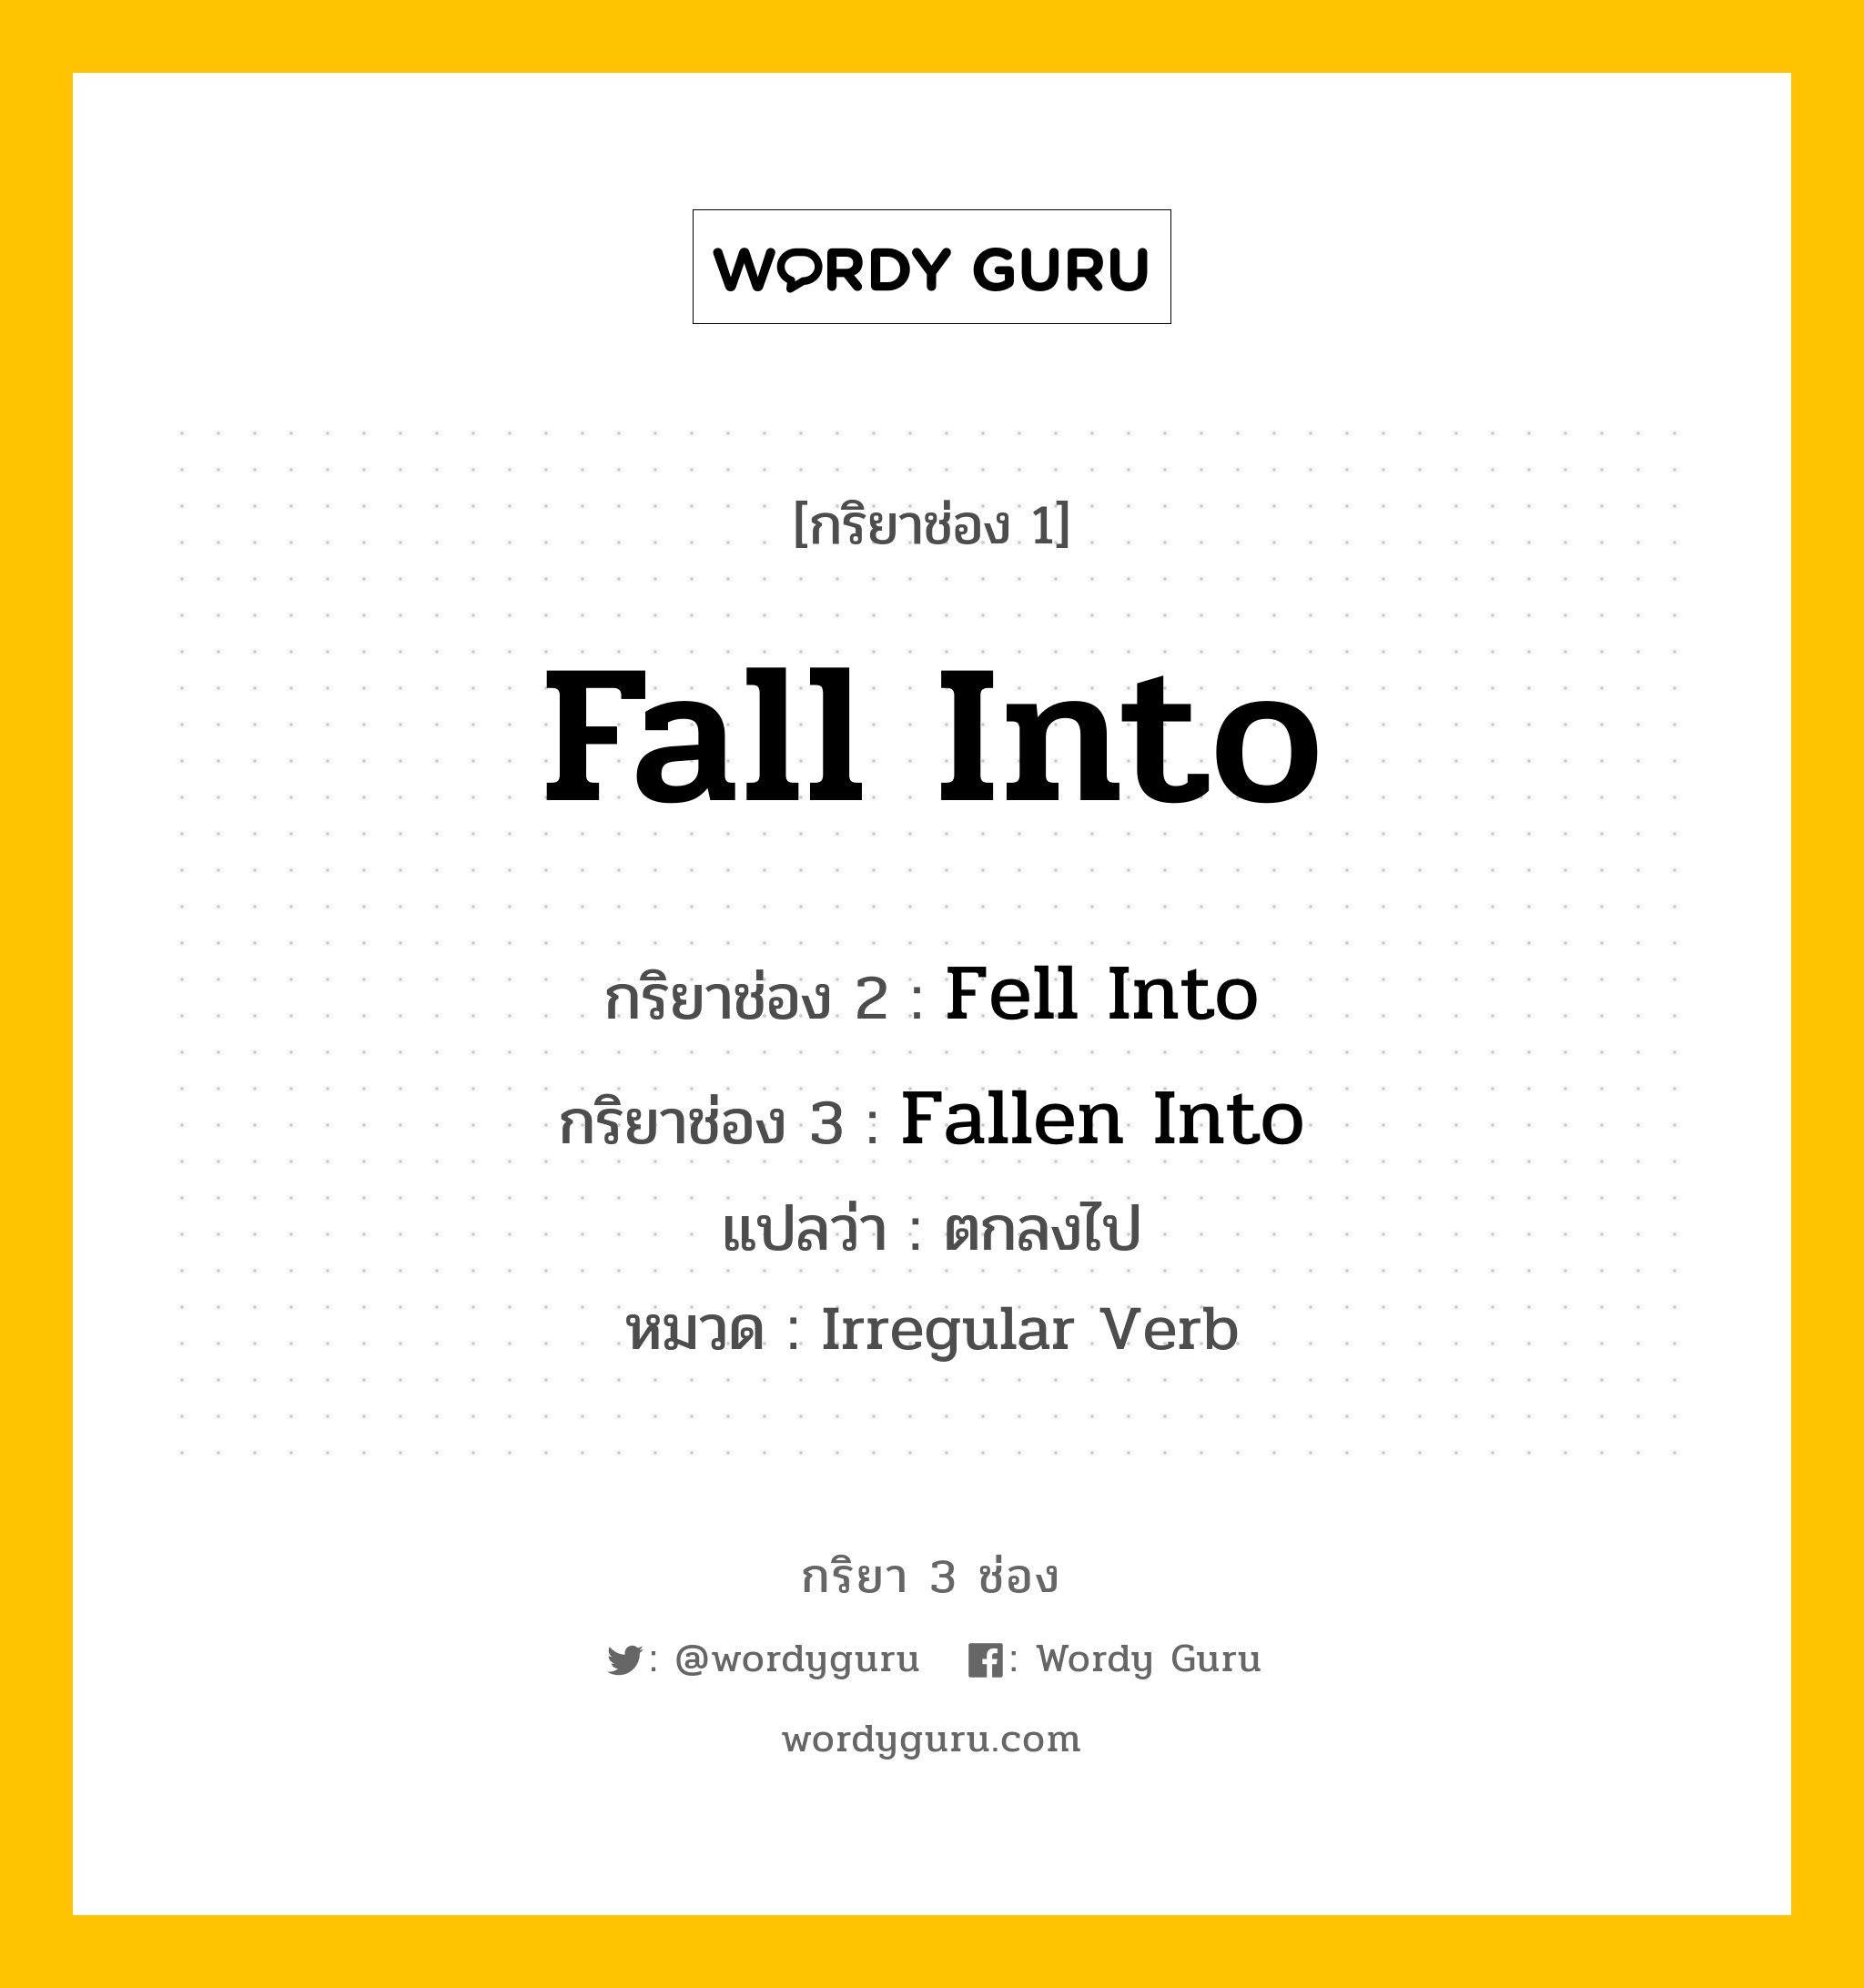 กริยา 3 ช่อง: Fall Into ช่อง 2 Fall Into ช่อง 3 คืออะไร, กริยาช่อง 1 Fall Into กริยาช่อง 2 Fell Into กริยาช่อง 3 Fallen Into แปลว่า ตกลงไป หมวด Irregular Verb หมวด Irregular Verb